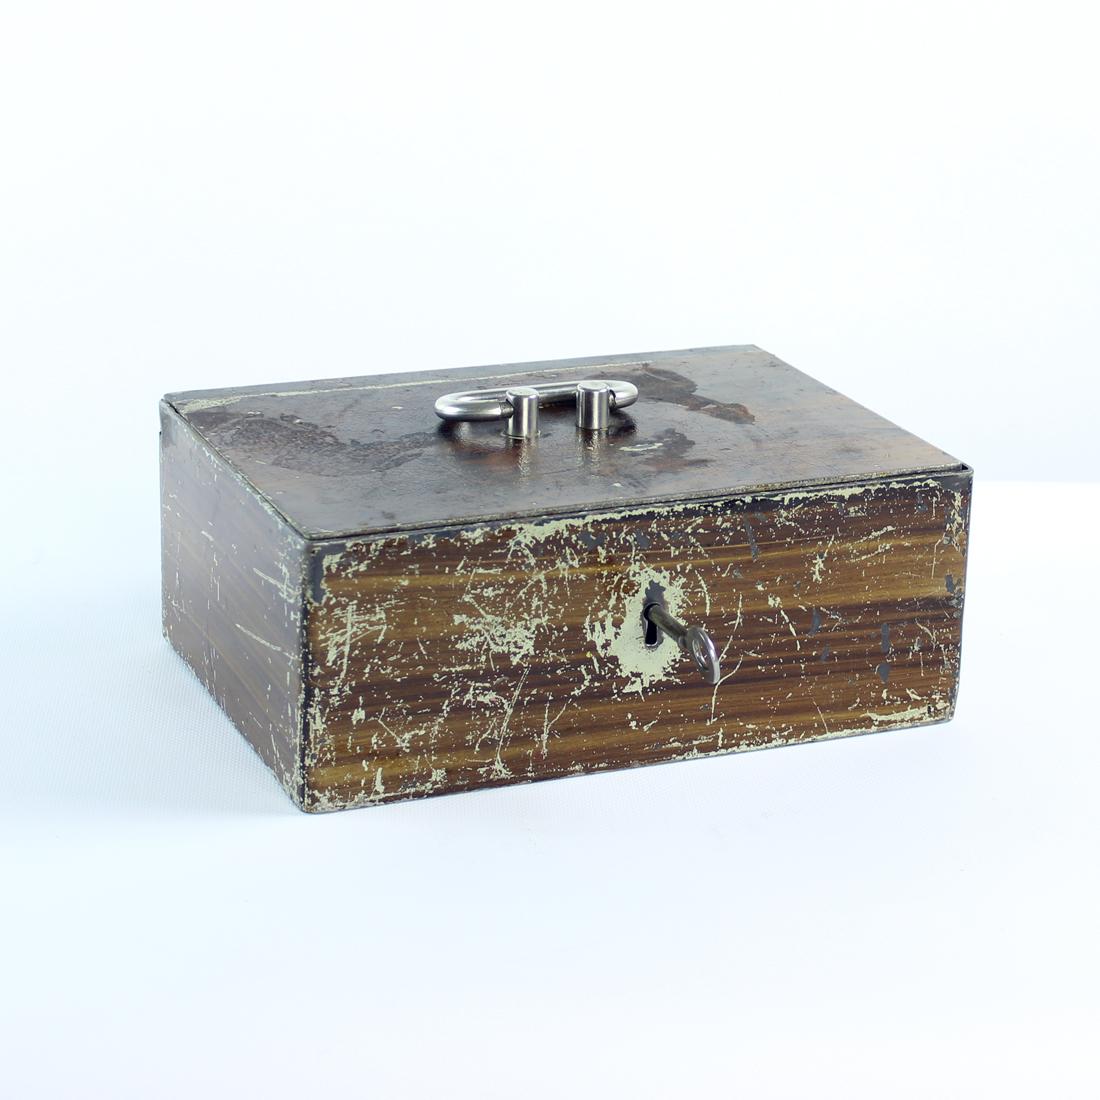 Schöne Vintage-Tresor-Box in einem großen funktionalen Zustand. Der Kasten wurde in den 1930er Jahren in der Tschechoslowakei hergestellt und funktioniert wie neu. Ursprünglicher Schlüssel. Die Box ist in Vintage-Finish mit Kratzern und Verschleiß